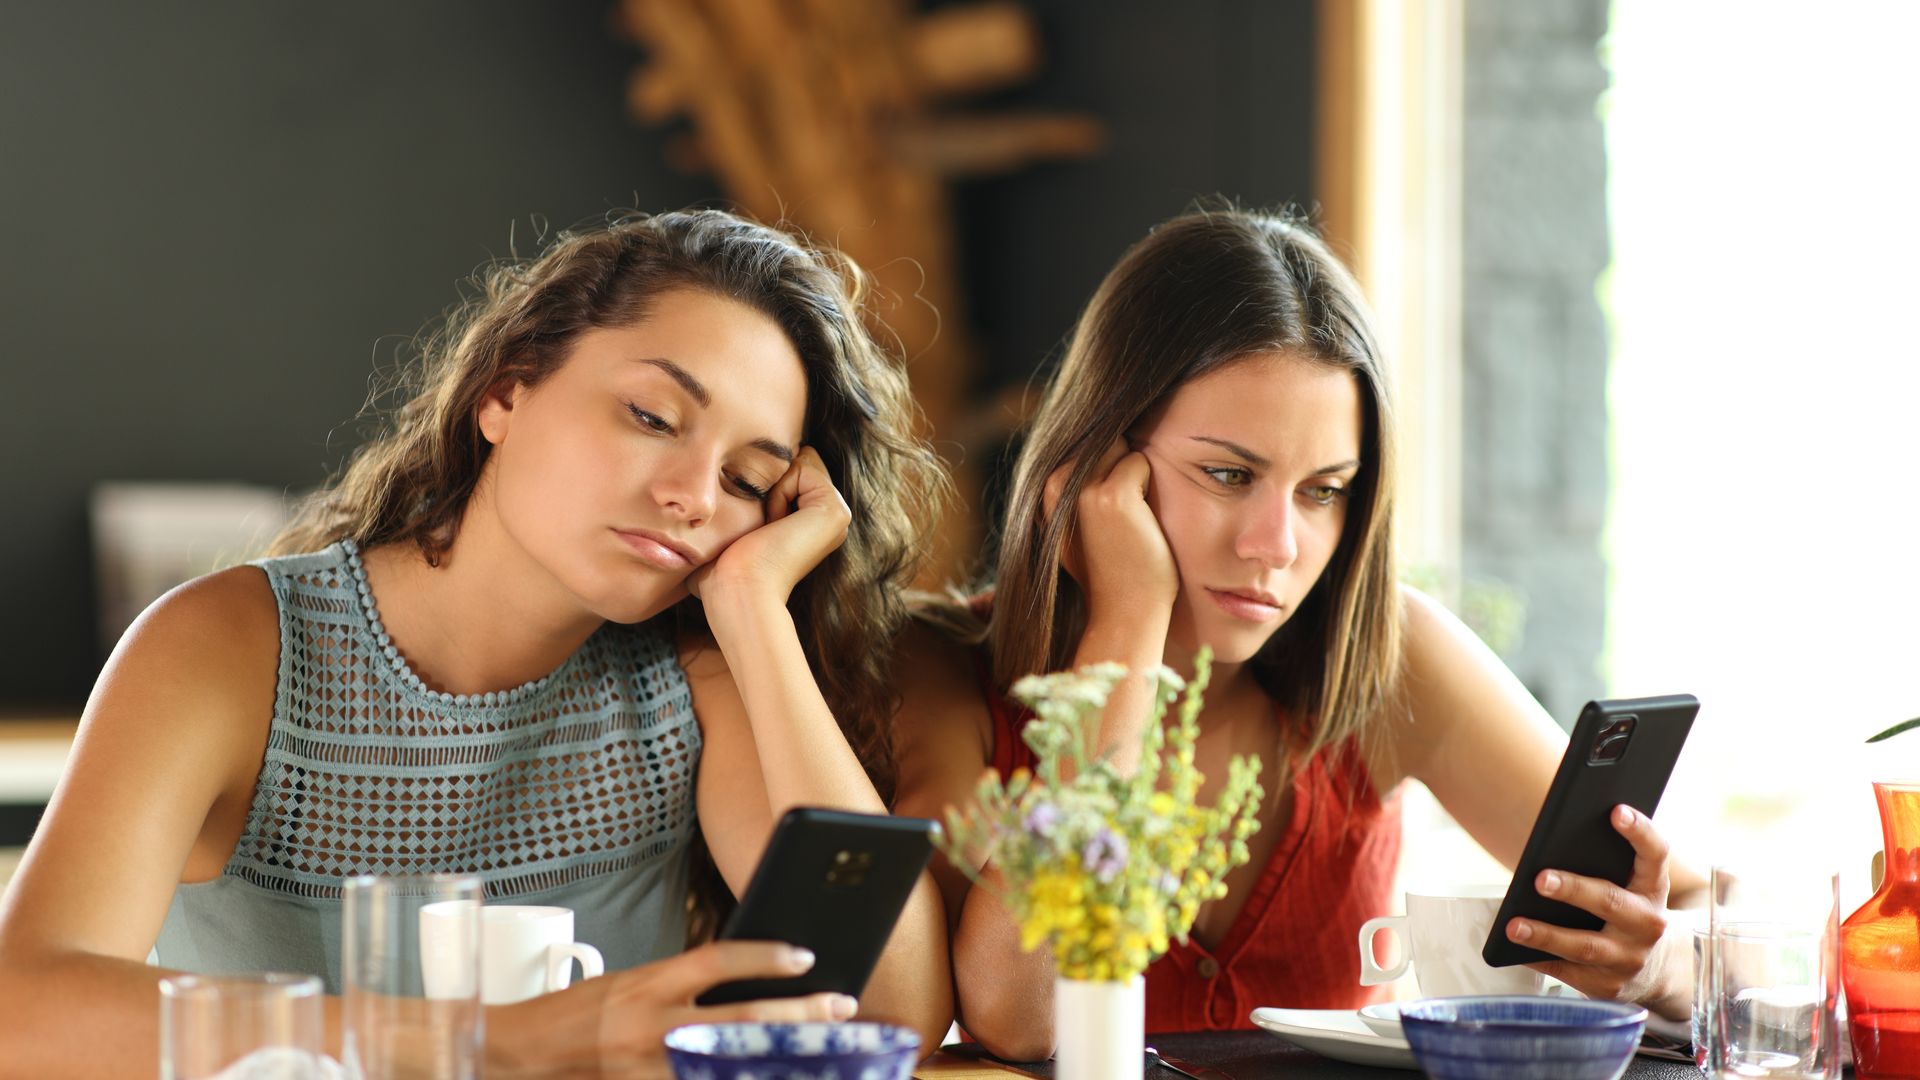 dos chicas jóvenes aburridas en un restaurante mirando sus móviles